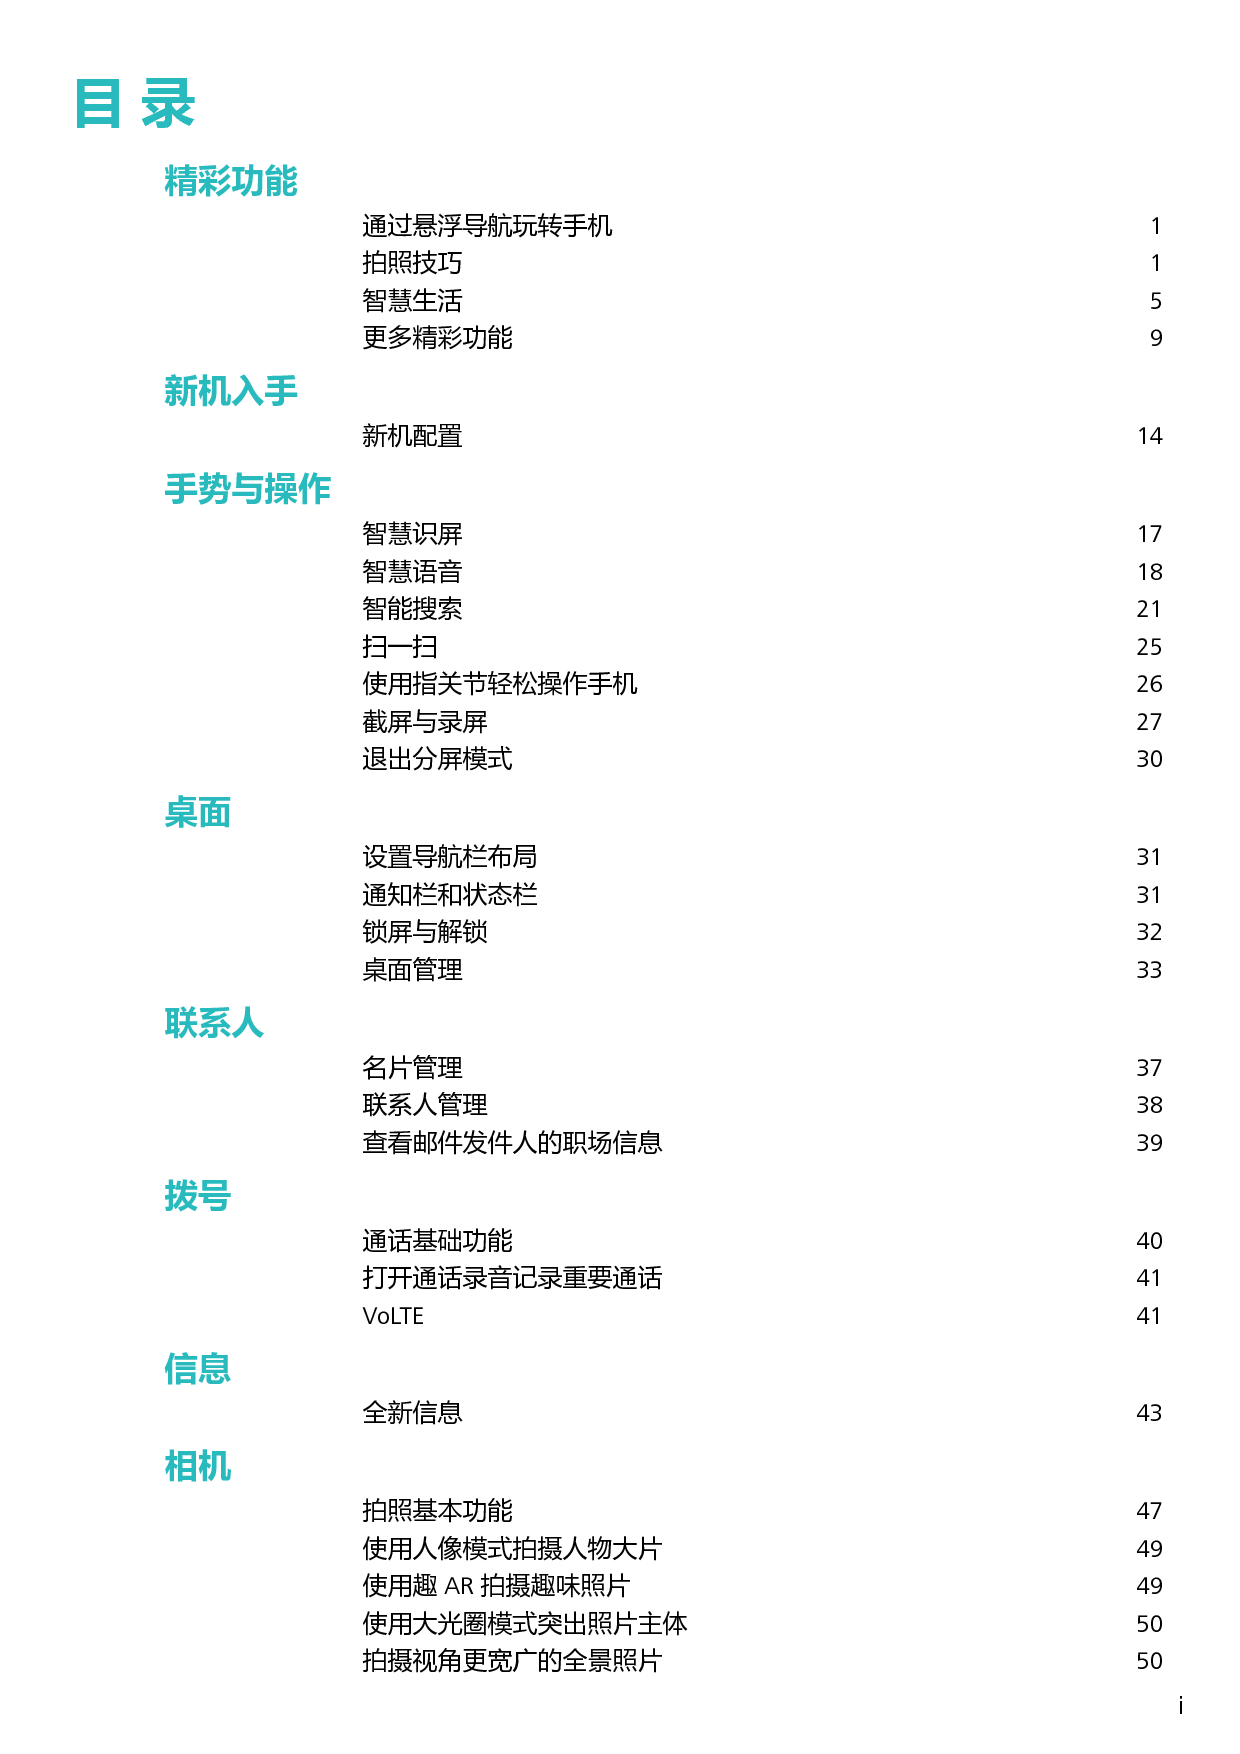 华为 Huawei NOVA 3 EMUI9.0 用户指南 第1页